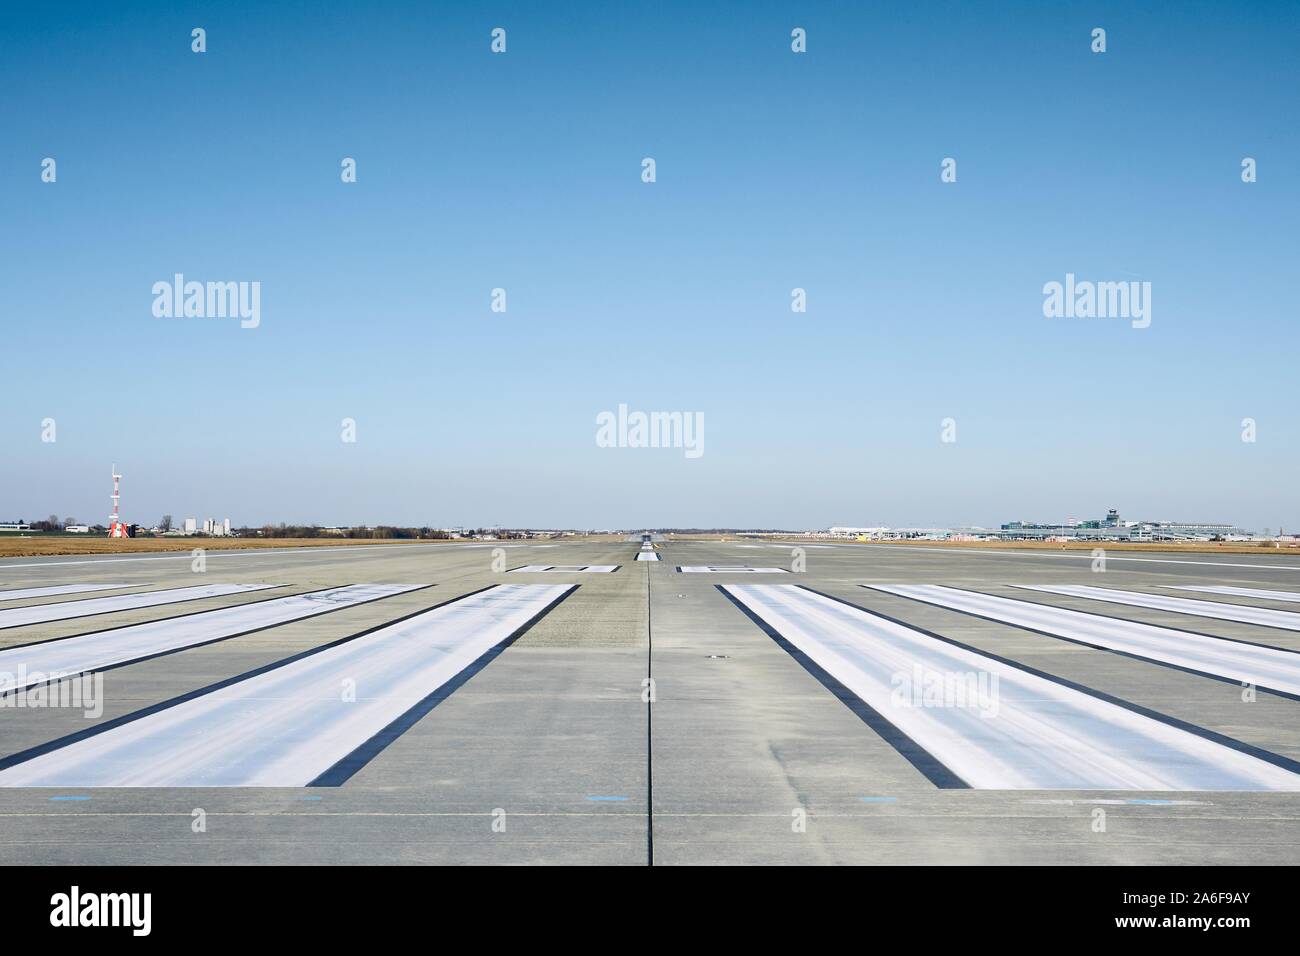 Livello di superficie della pista di aeroporto con la segnaletica stradale contro il cielo chiaro. Foto Stock